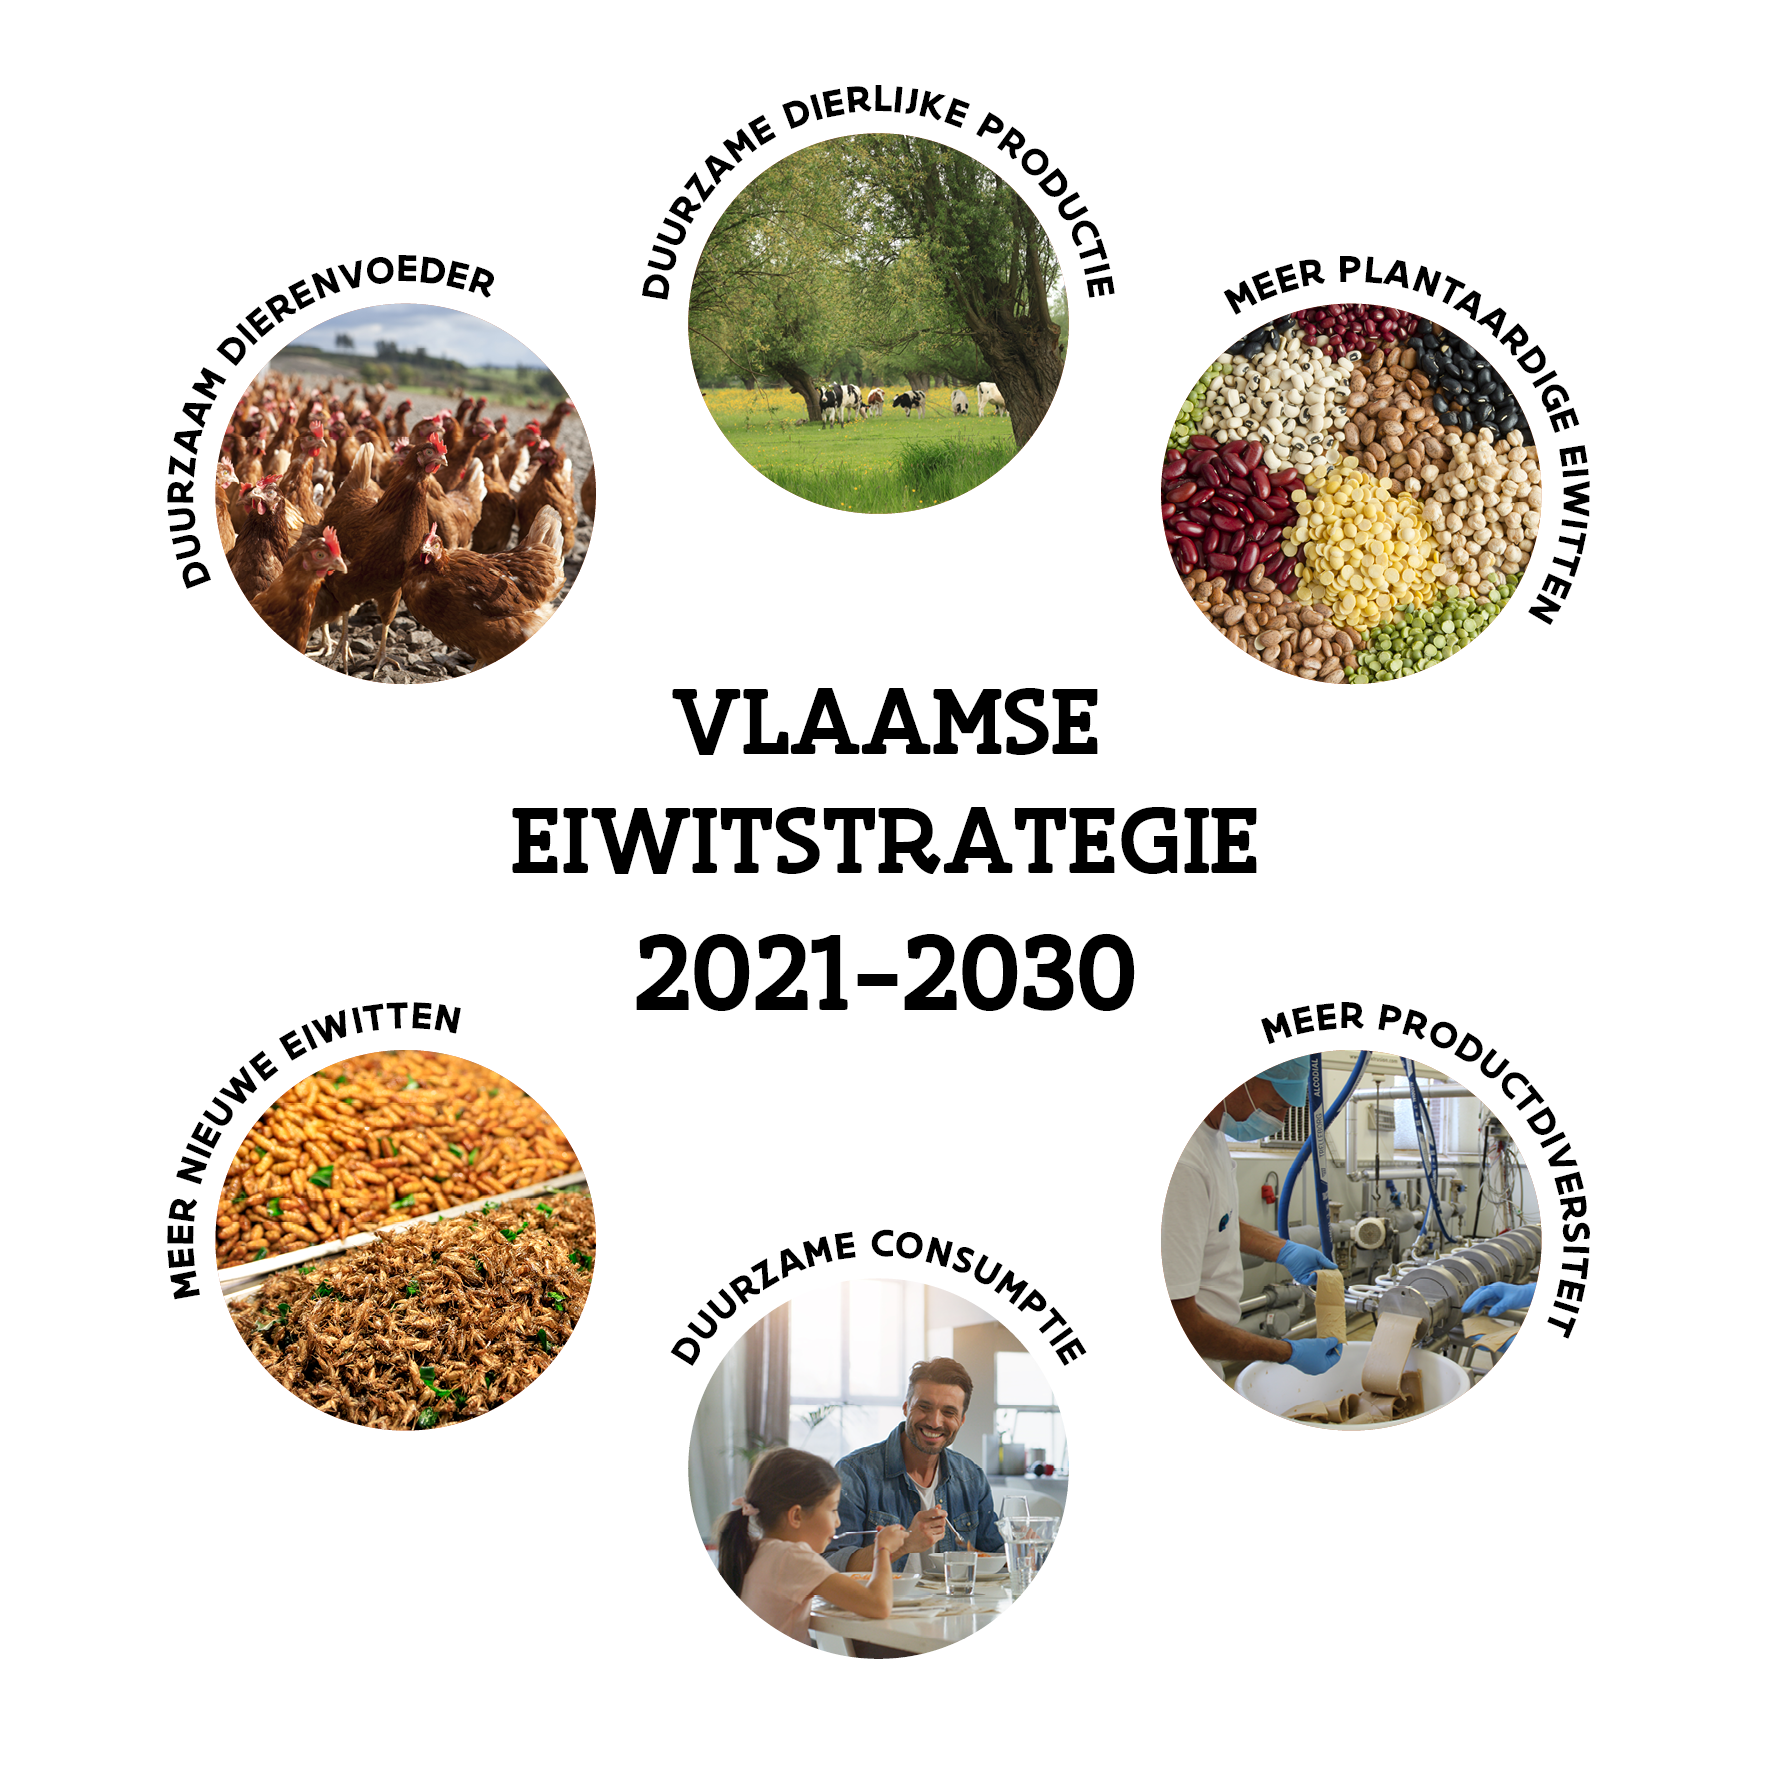 Vlaamse eiwitstrategie 2021-2030